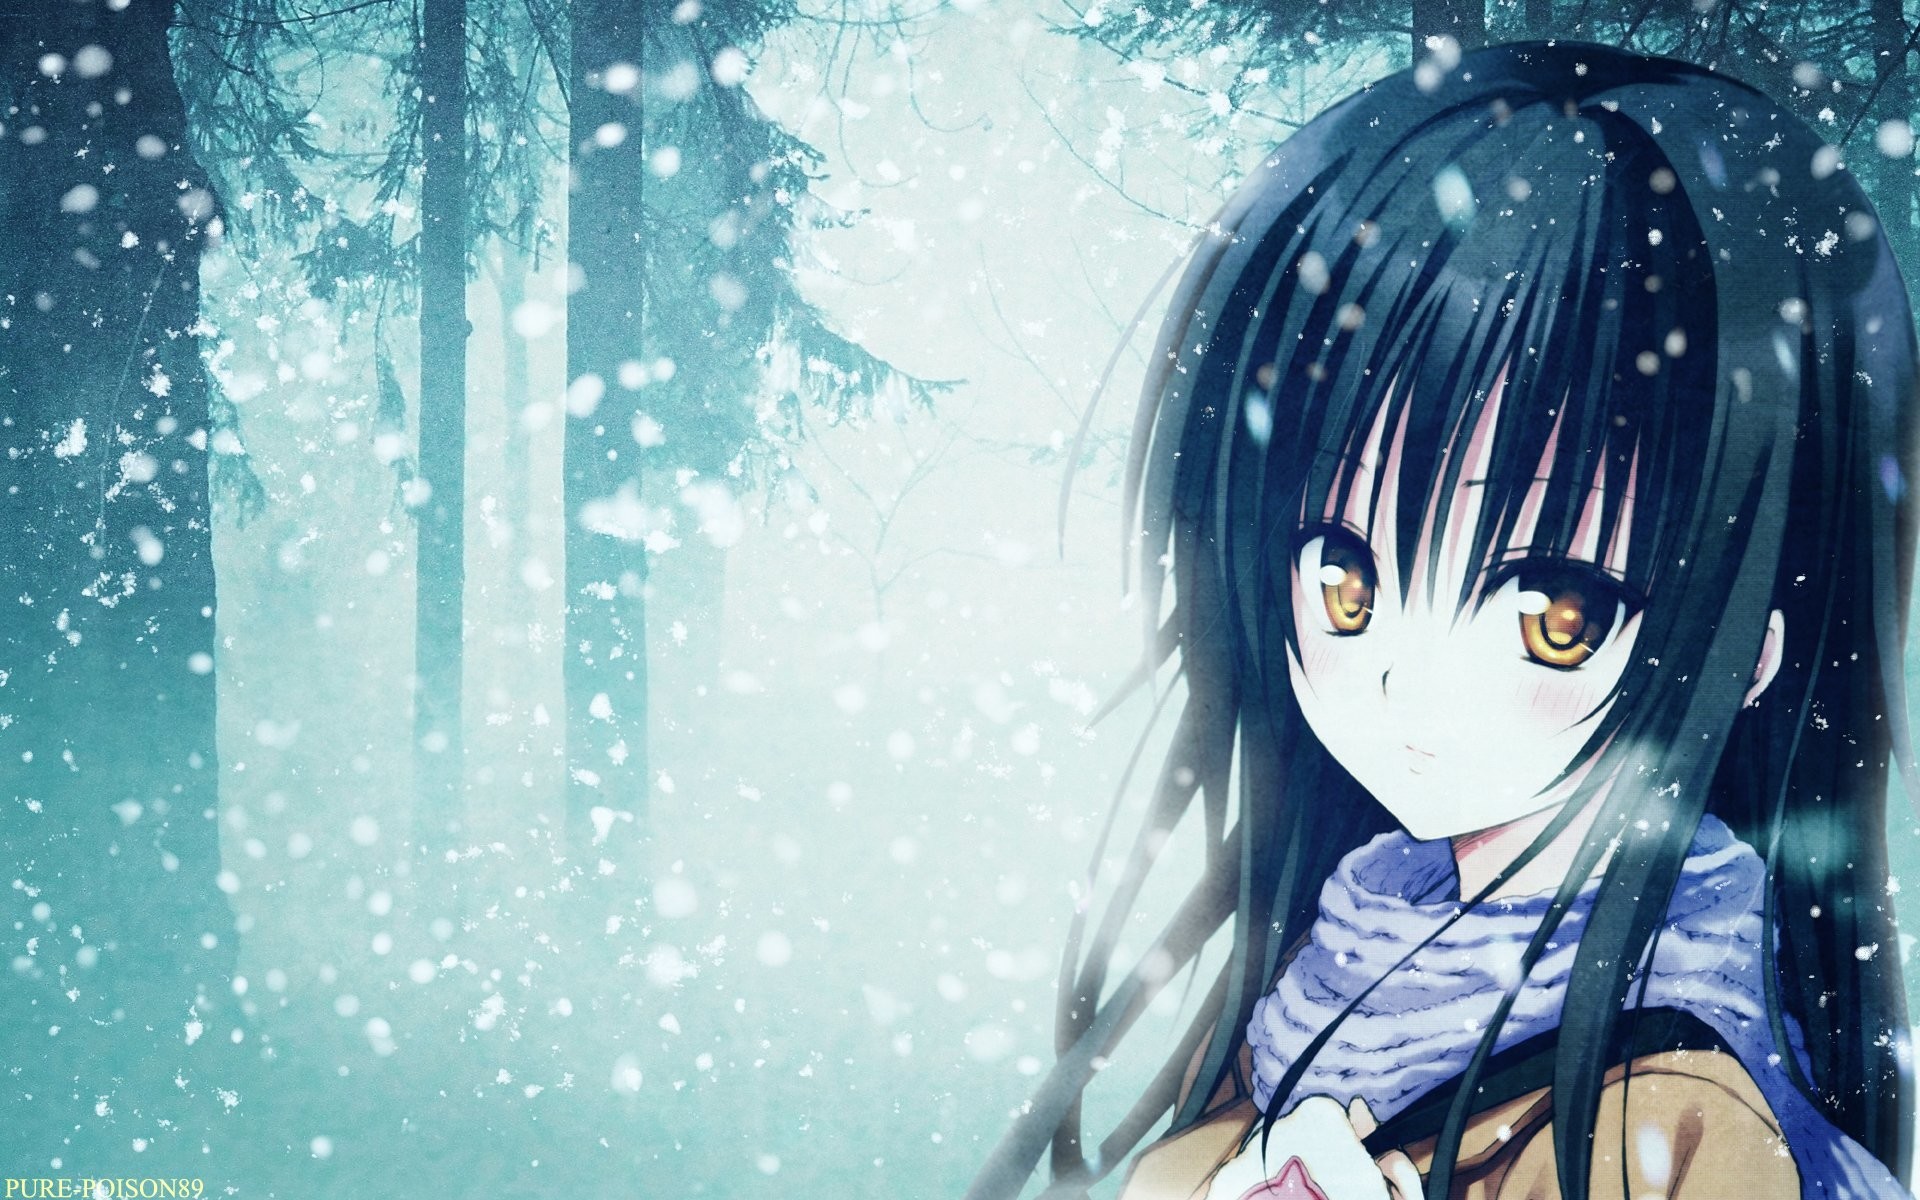 Beautiful Anime Girl - Sad Anime Girl Wallpaper Hd - HD Wallpaper 